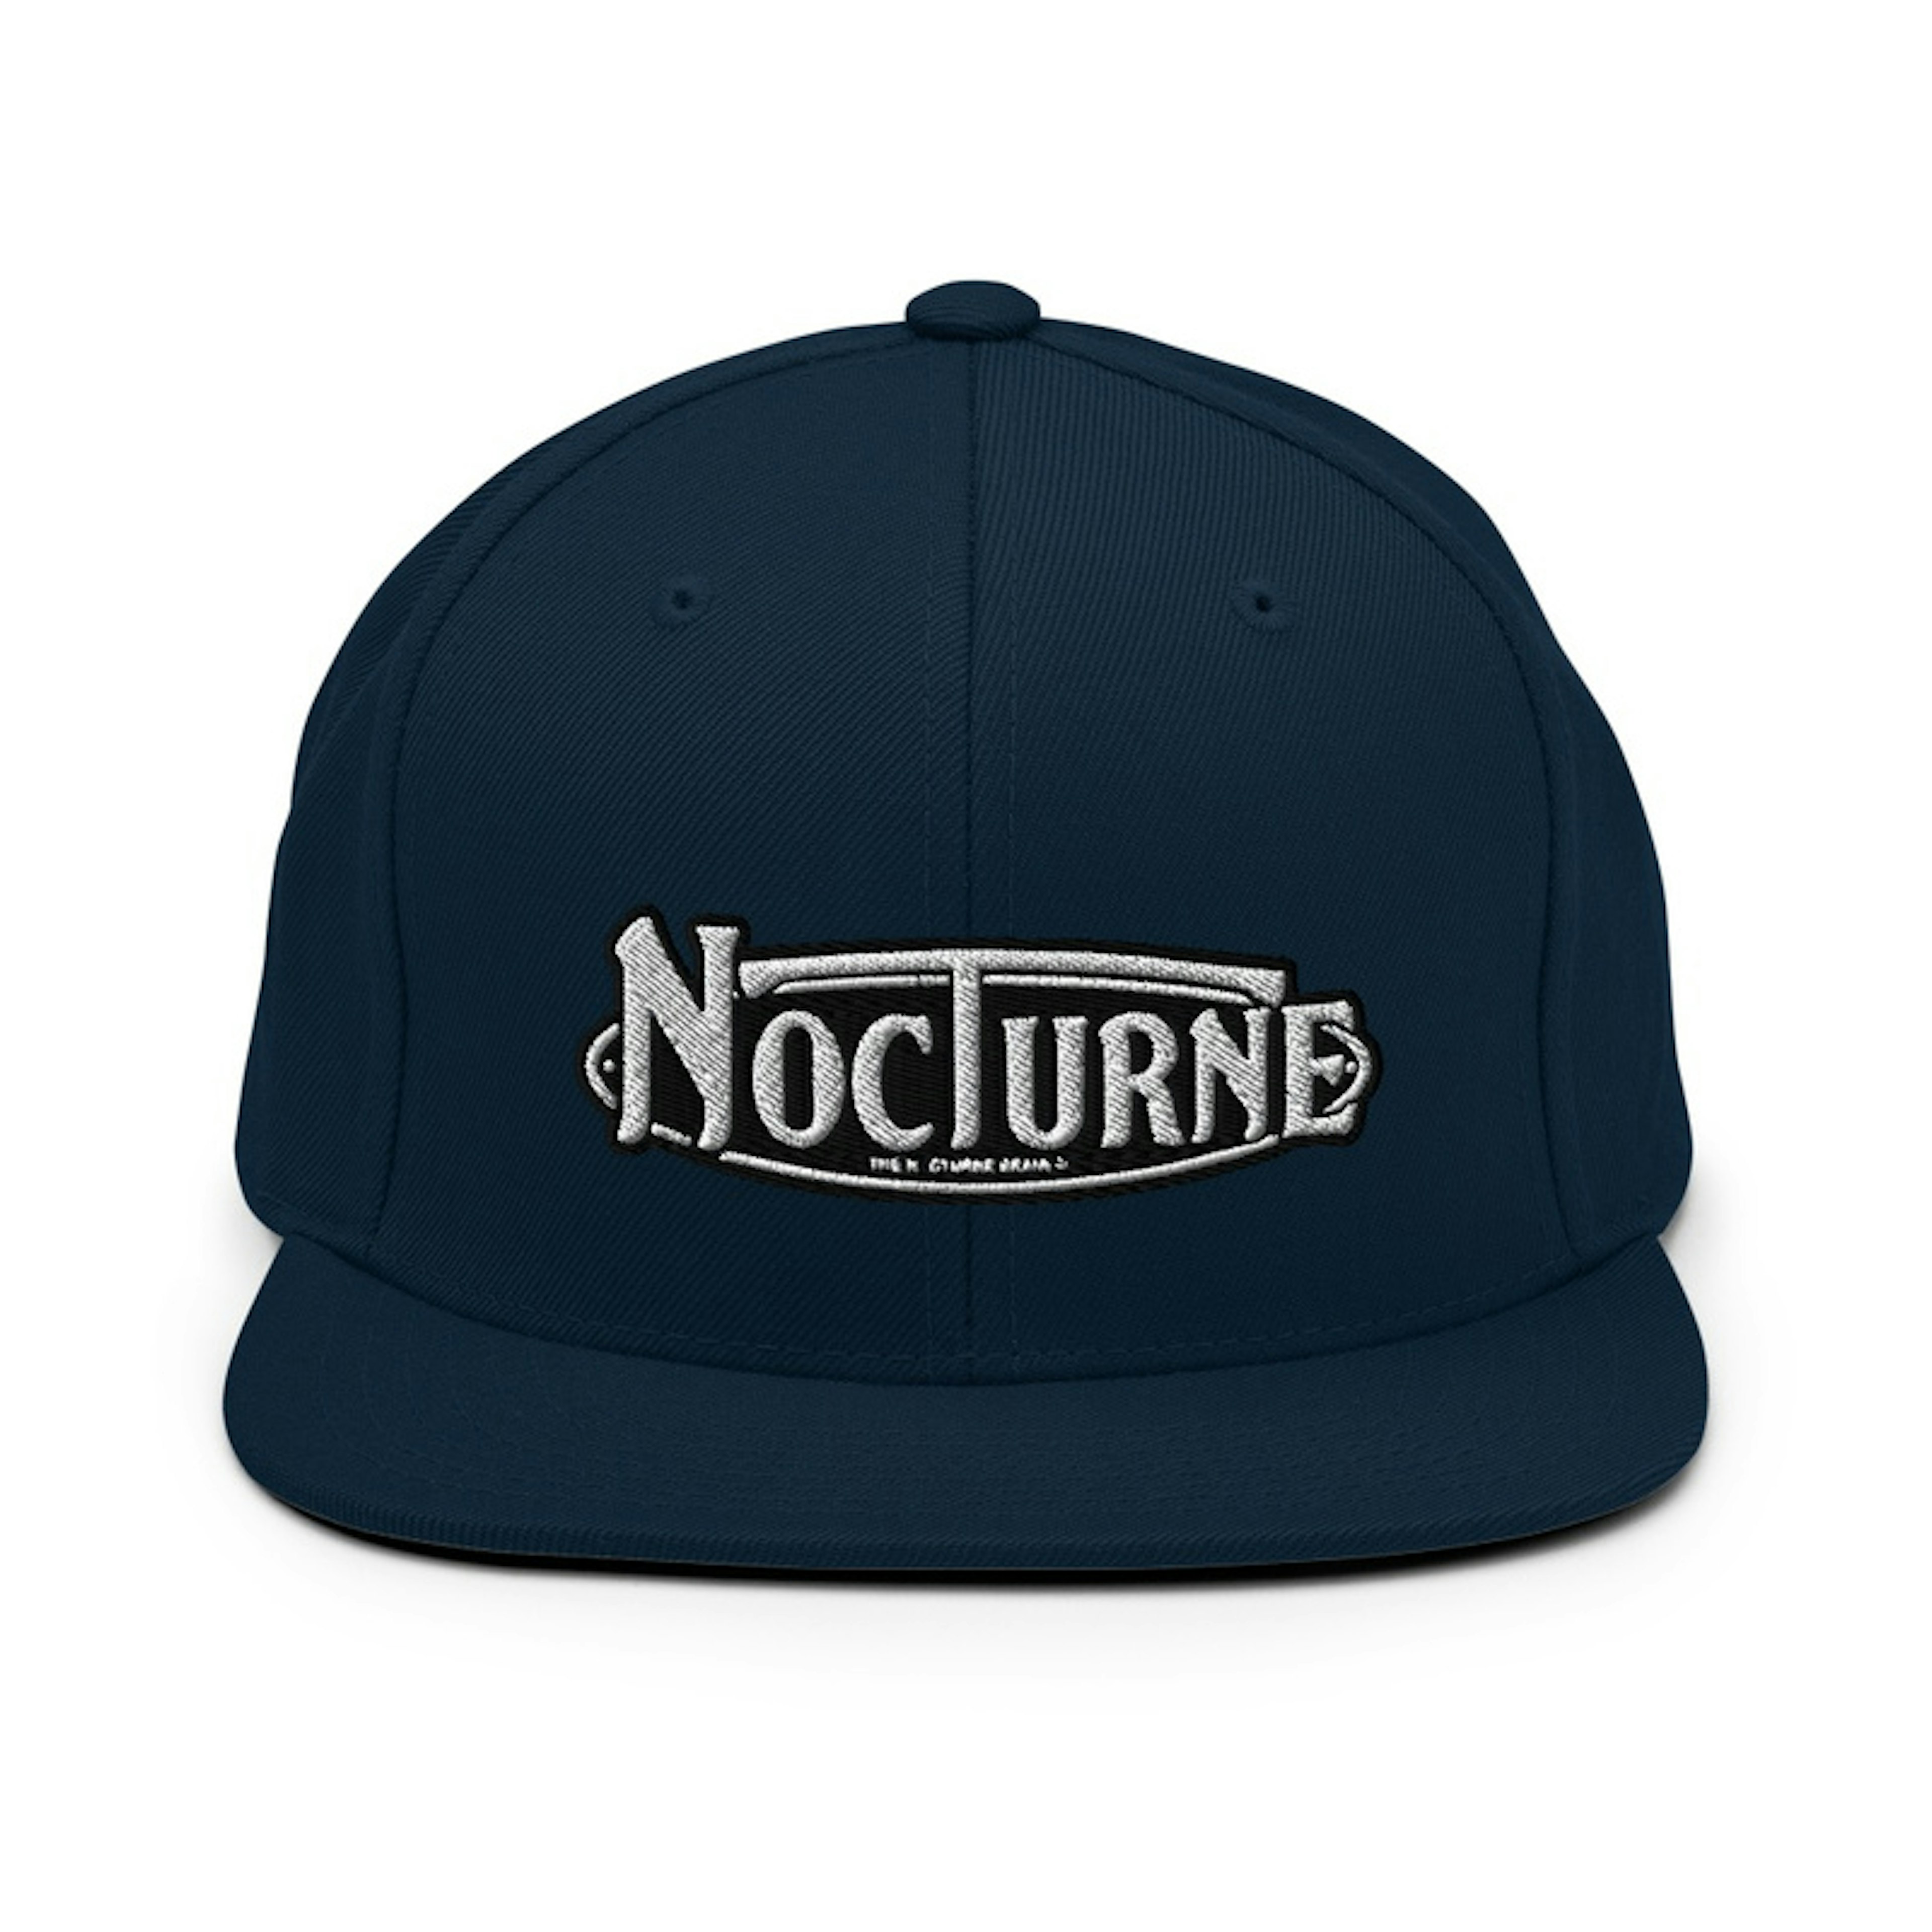 Nocturne Logo Snap back Cap